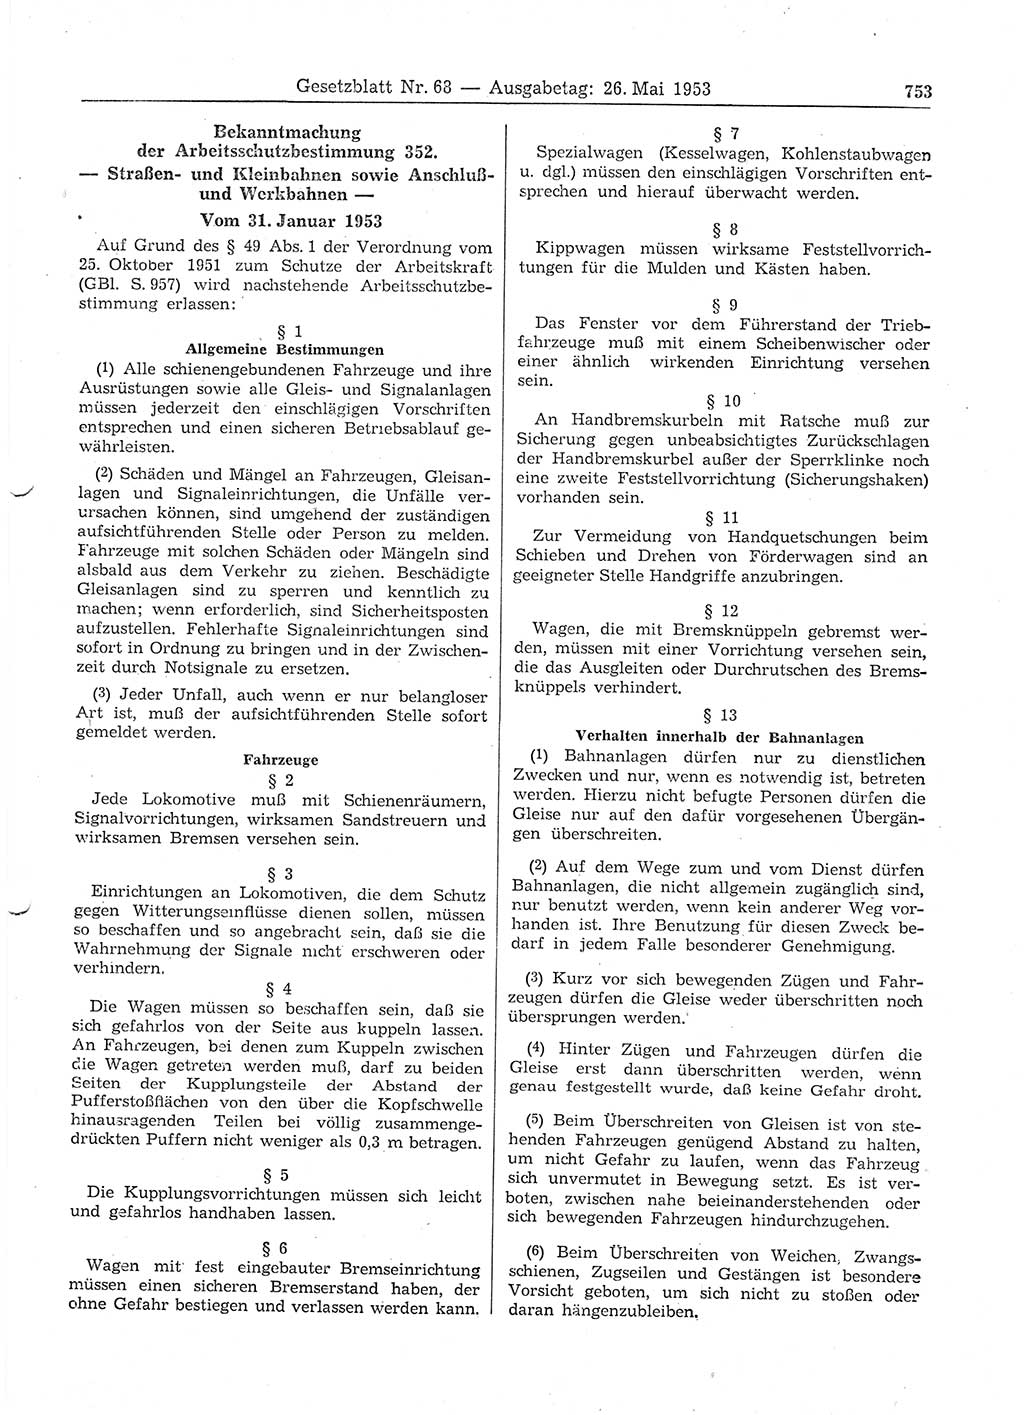 Gesetzblatt (GBl.) der Deutschen Demokratischen Republik (DDR) 1953, Seite 753 (GBl. DDR 1953, S. 753)